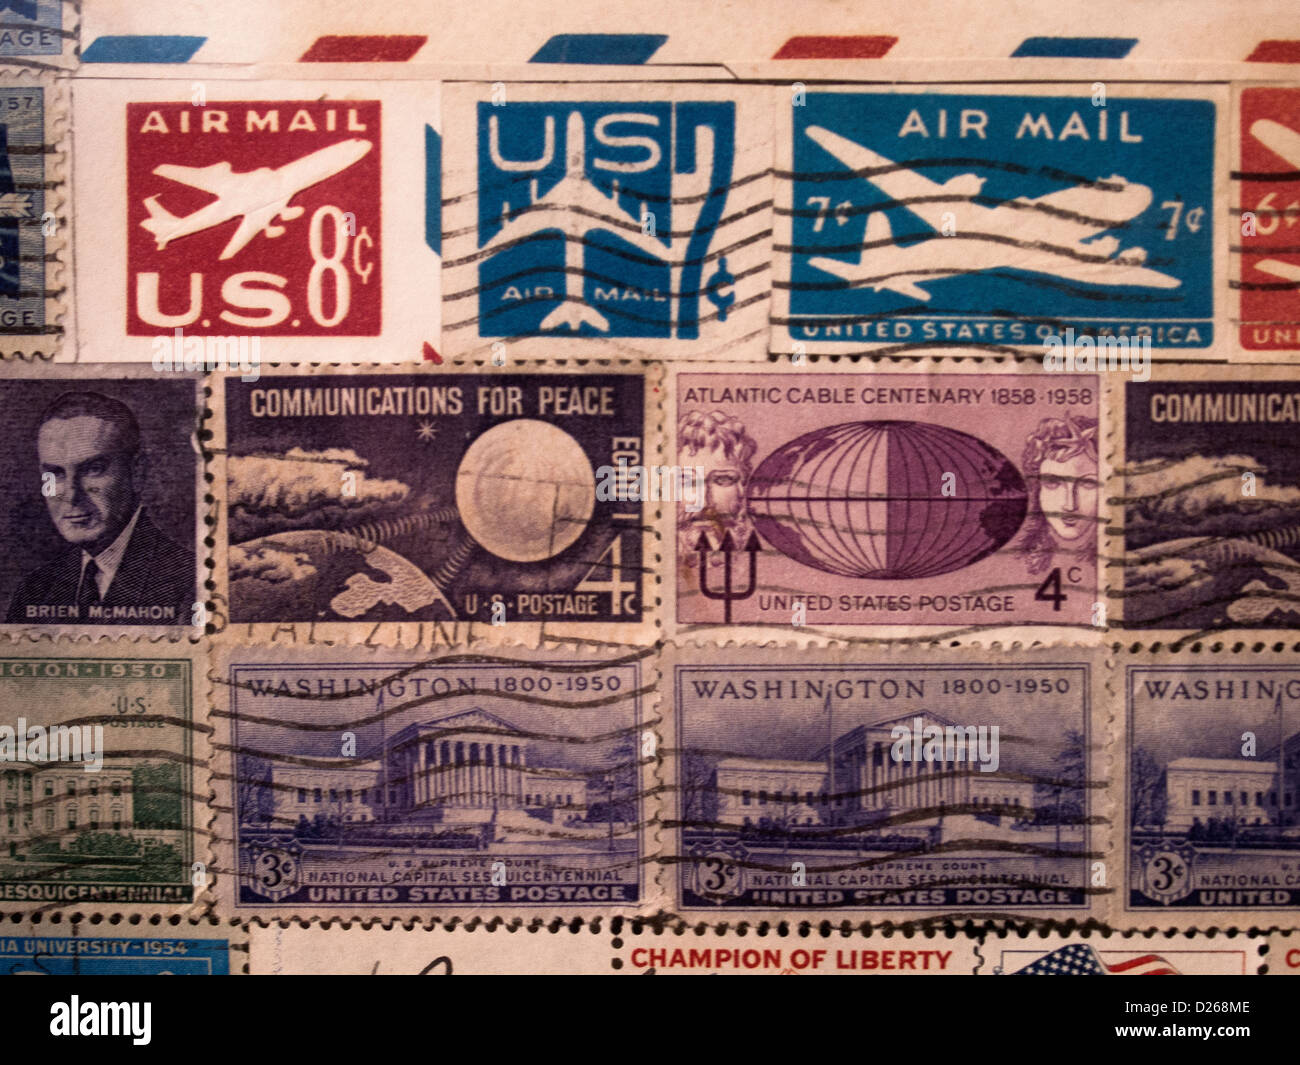 Sellos cancelados desde la década de 1950, muestran hélice y aviones jet en sellos que sólo cuestan unos cuantos centavos. Foto de stock